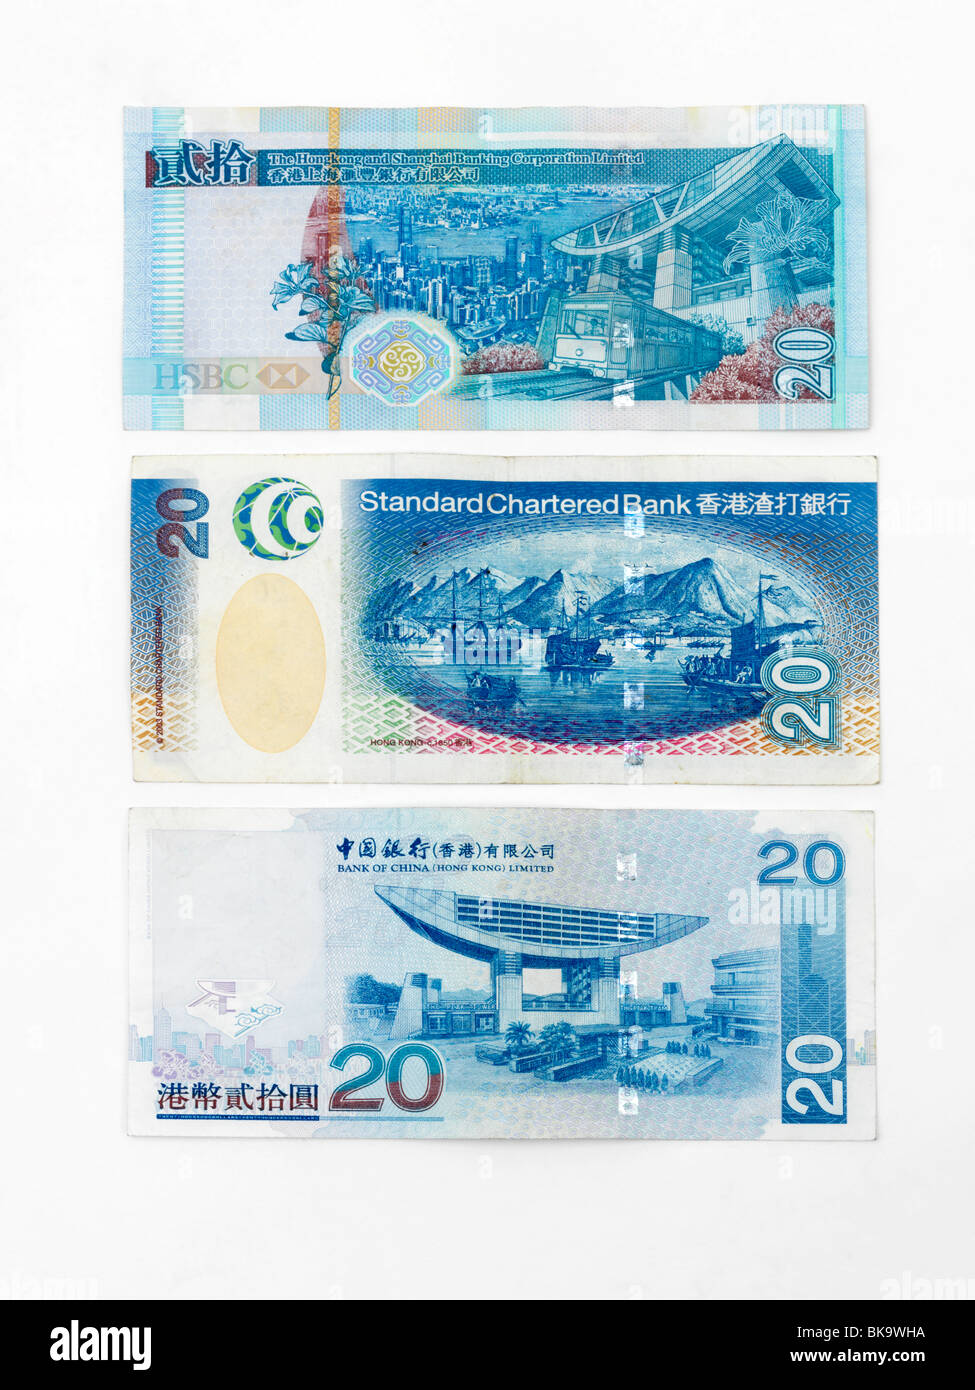 Hong Kong Dollars Banknotes Stock Photo